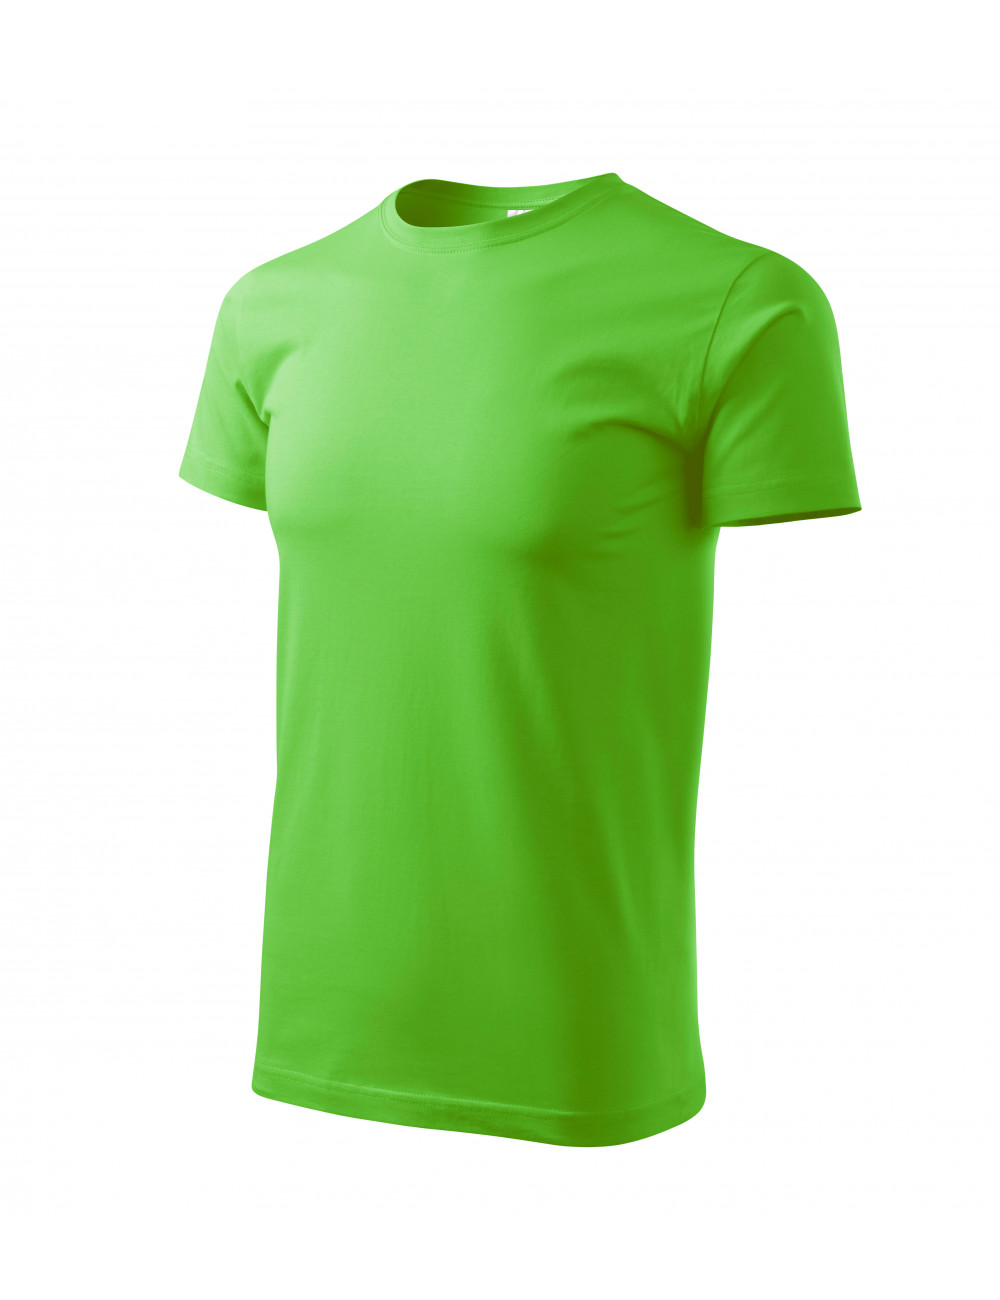 Men`s basic t-shirt 129 green apple Adler Malfini